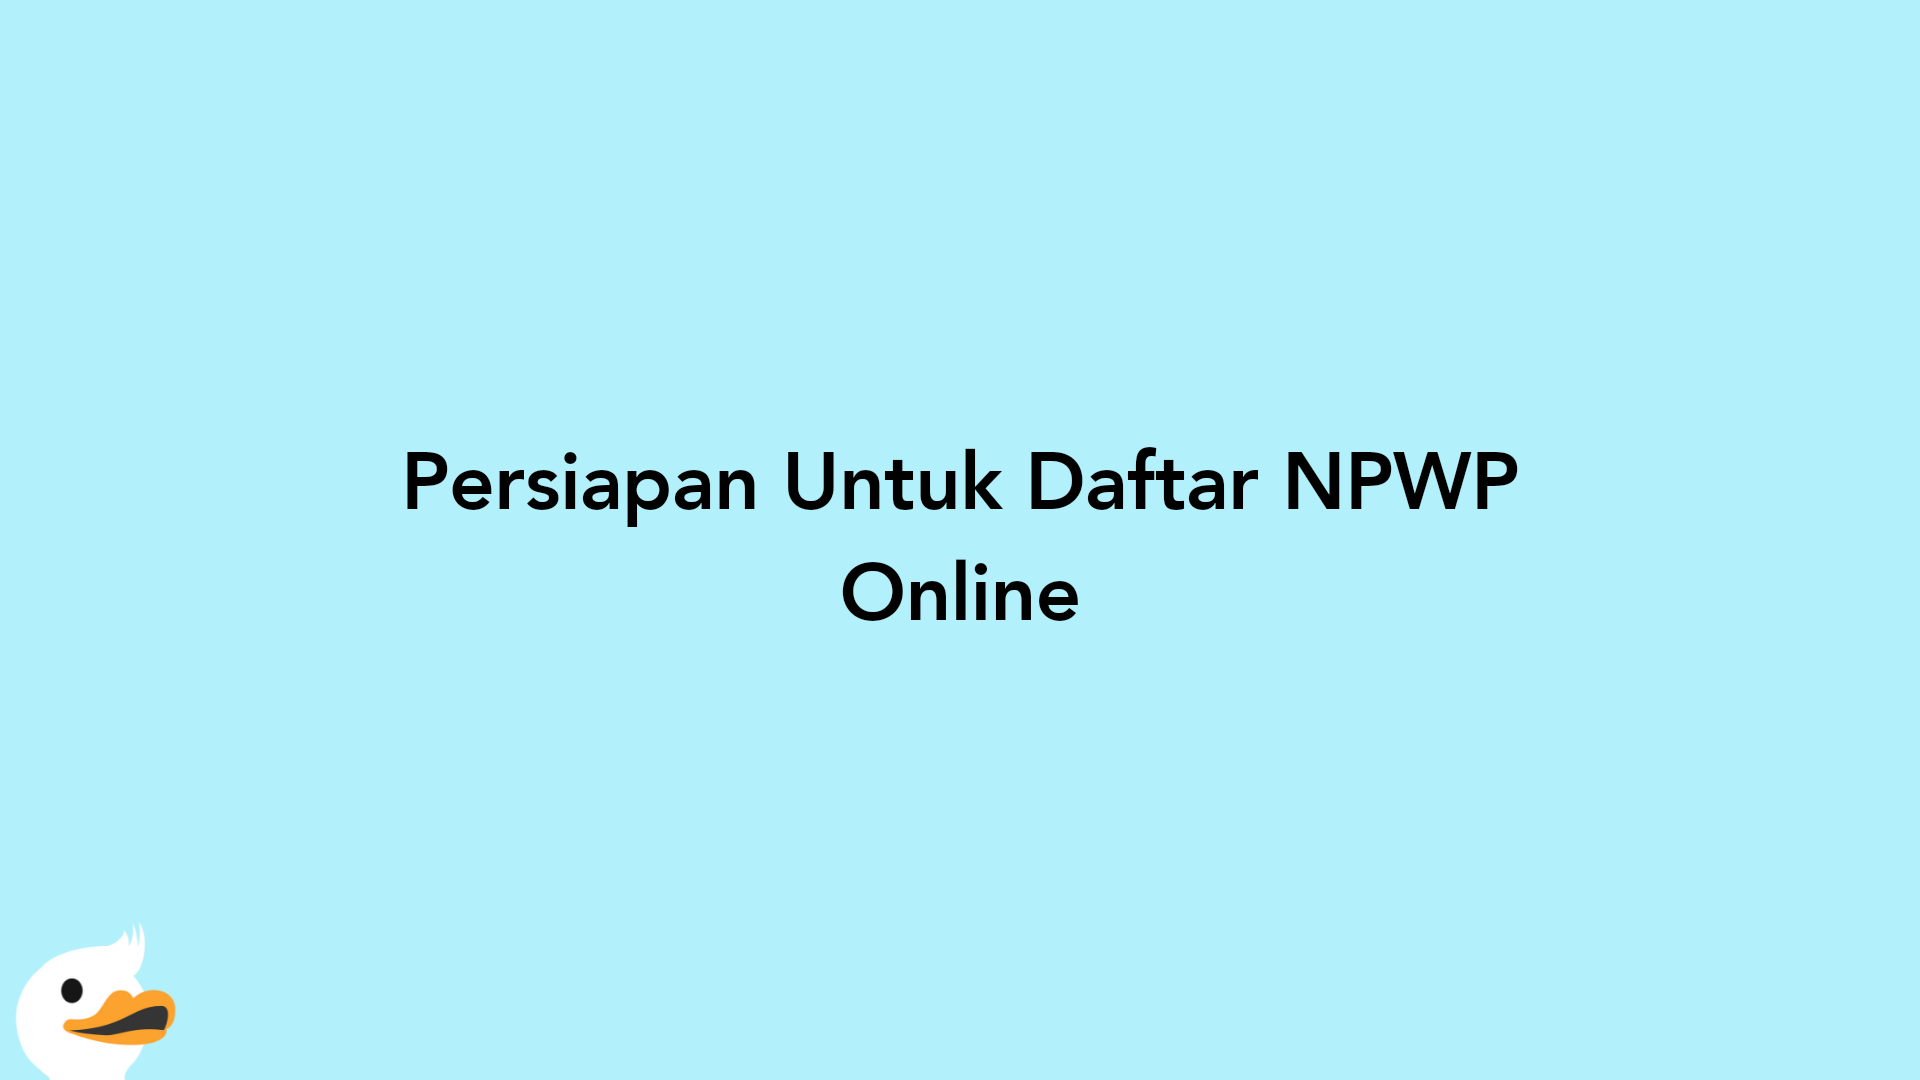 Persiapan Untuk Daftar NPWP Online